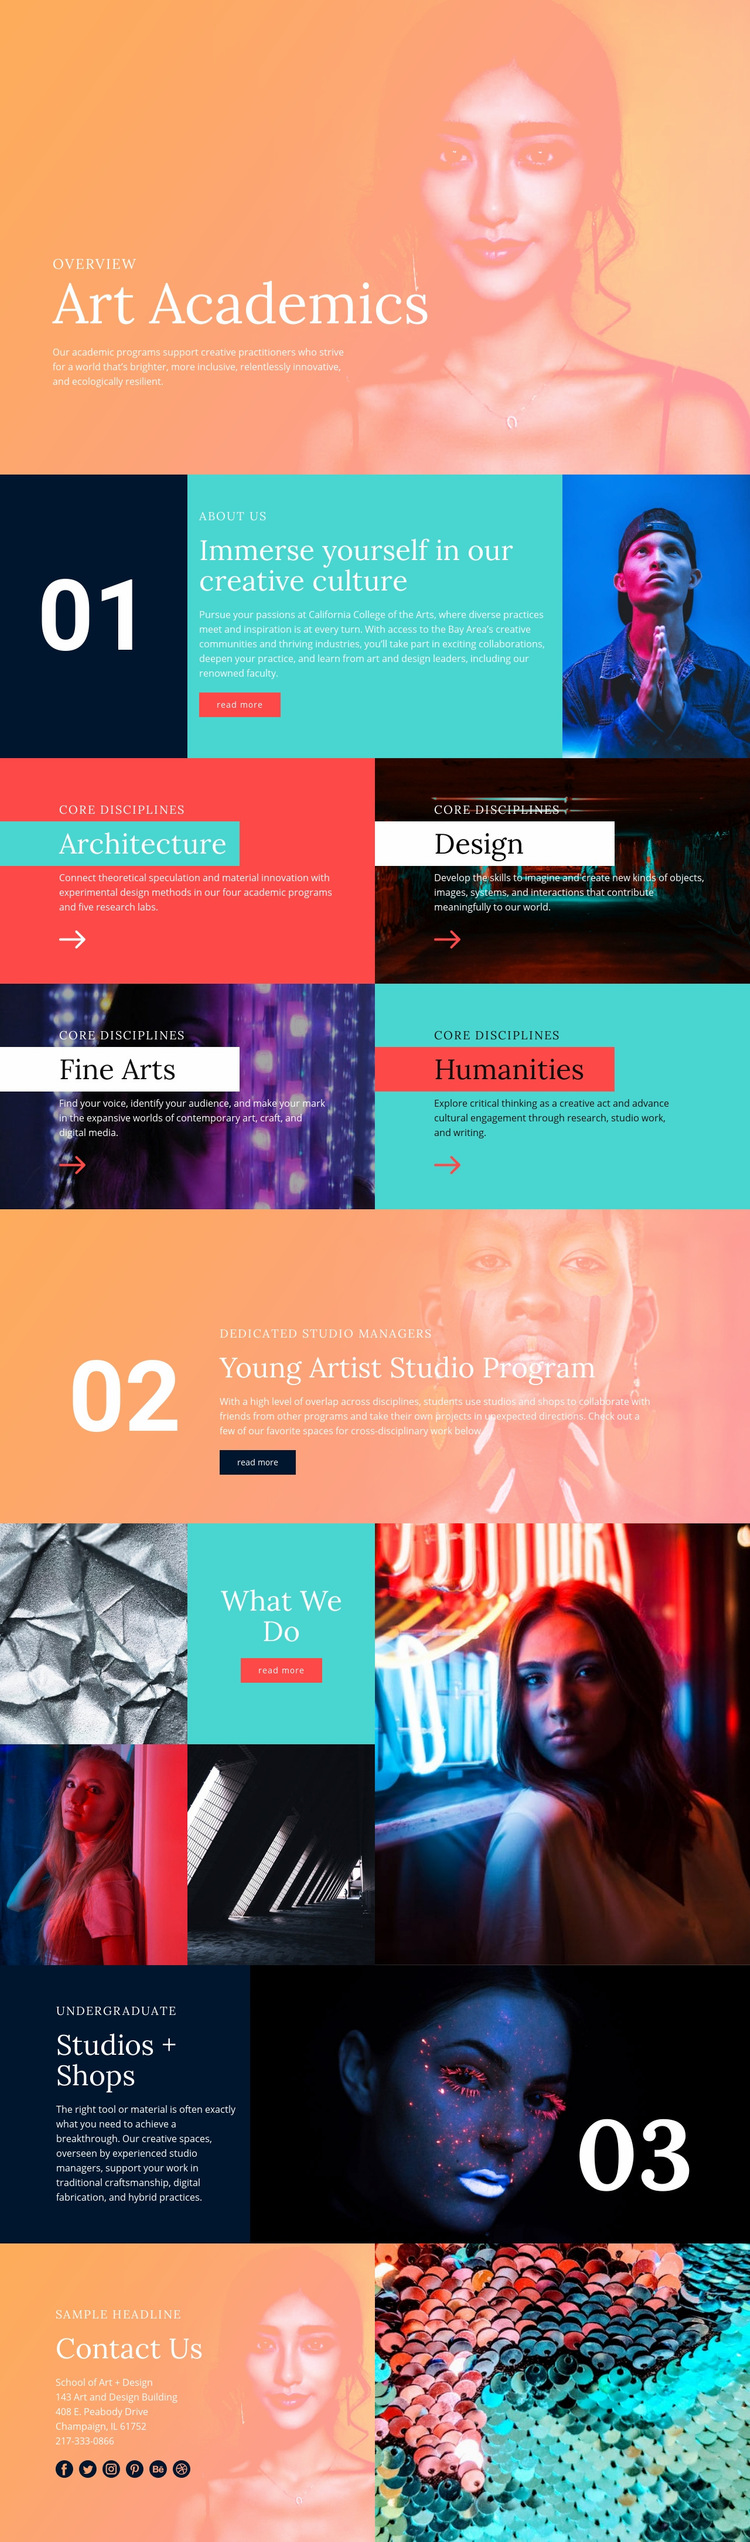 Creative culture in school Web Page Design